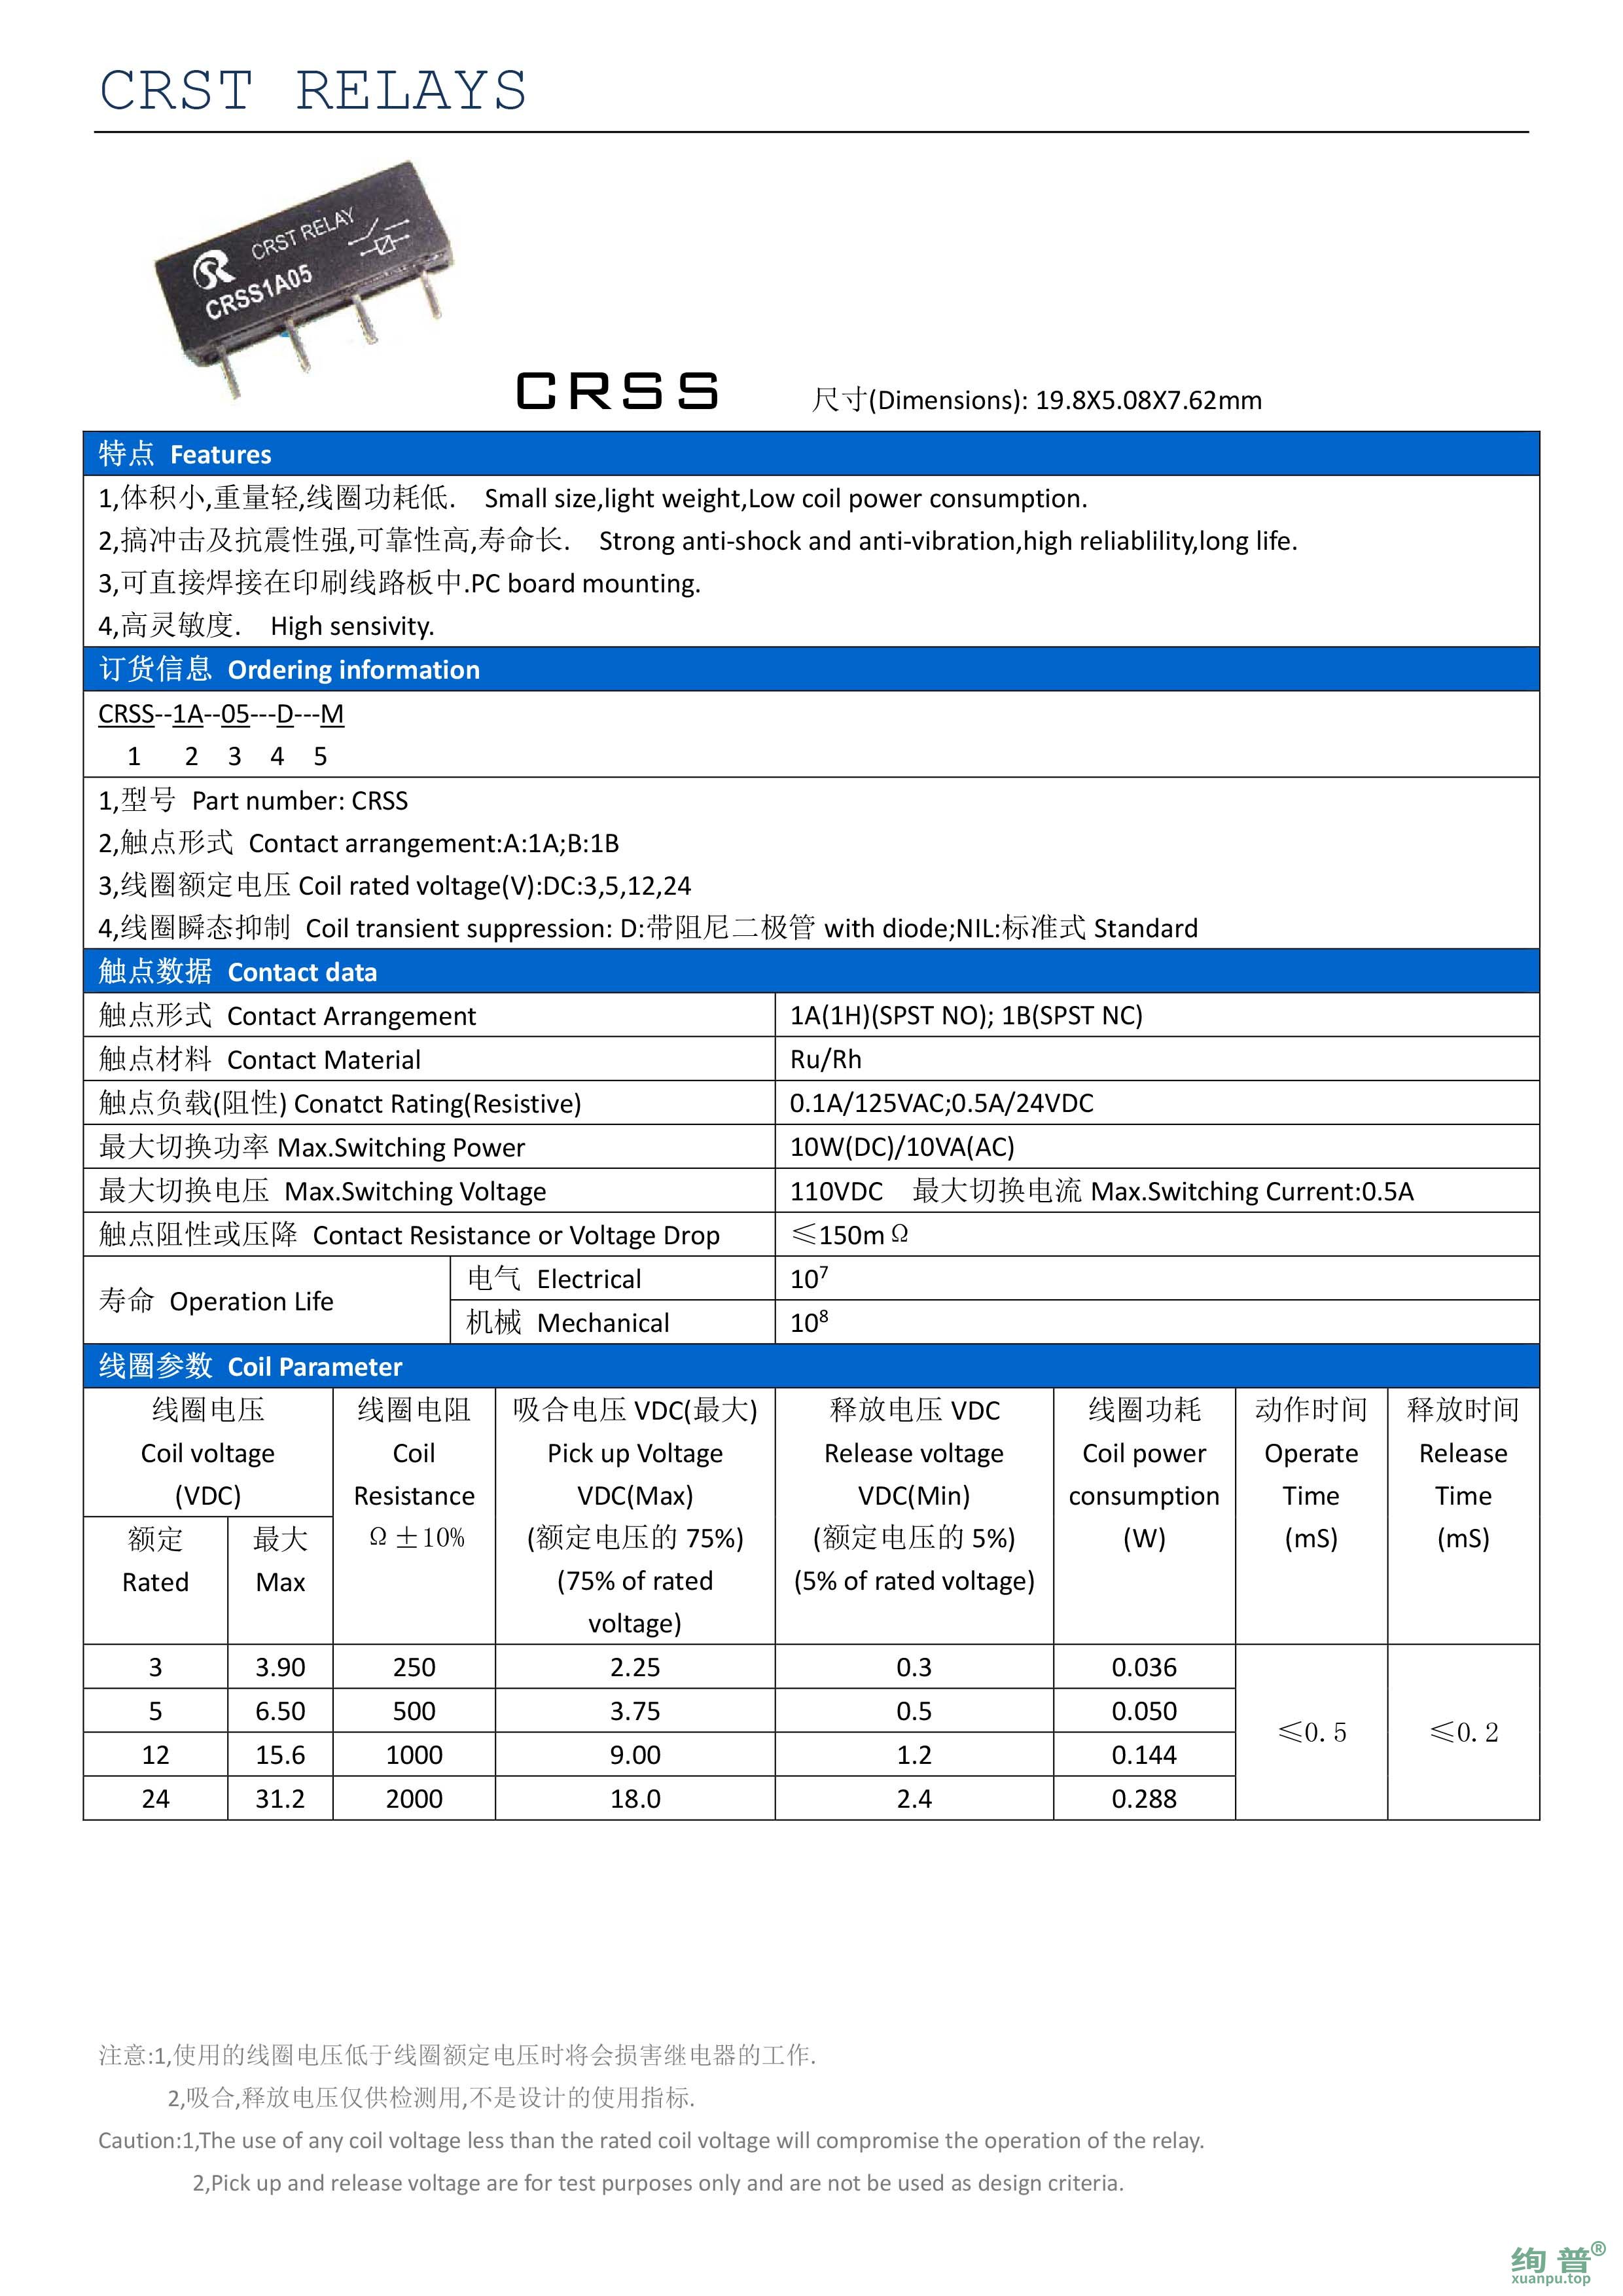 CRSS-1B-24-M